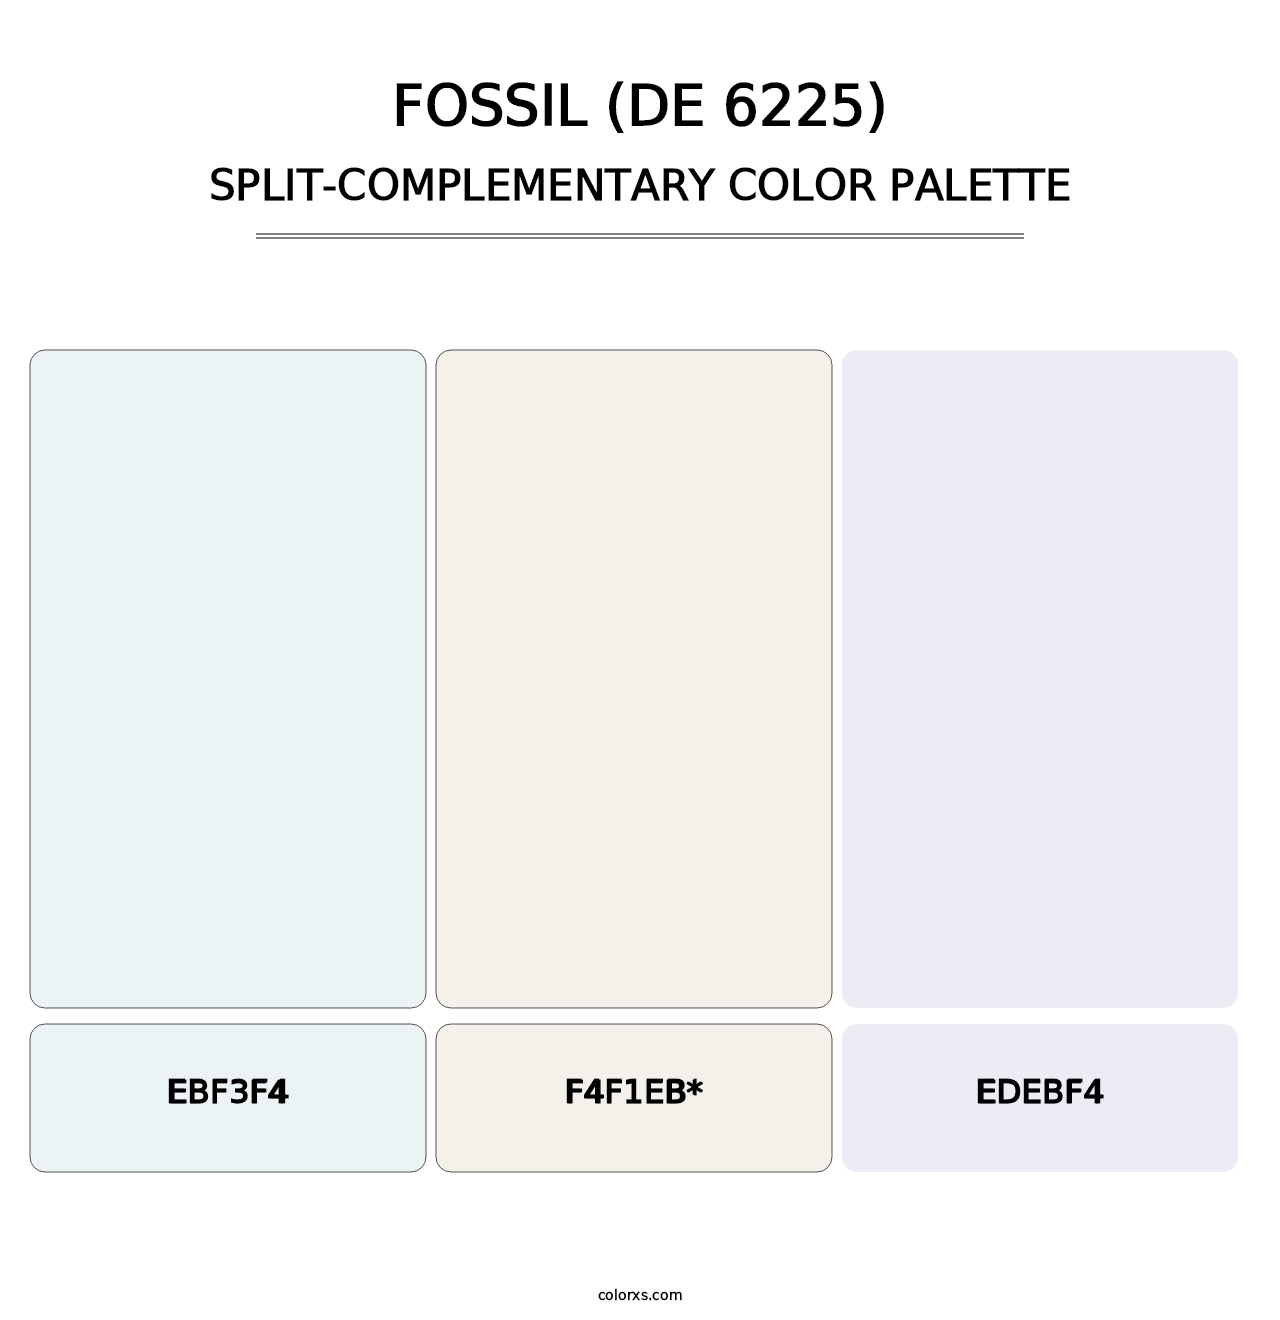 Fossil (DE 6225) - Split-Complementary Color Palette